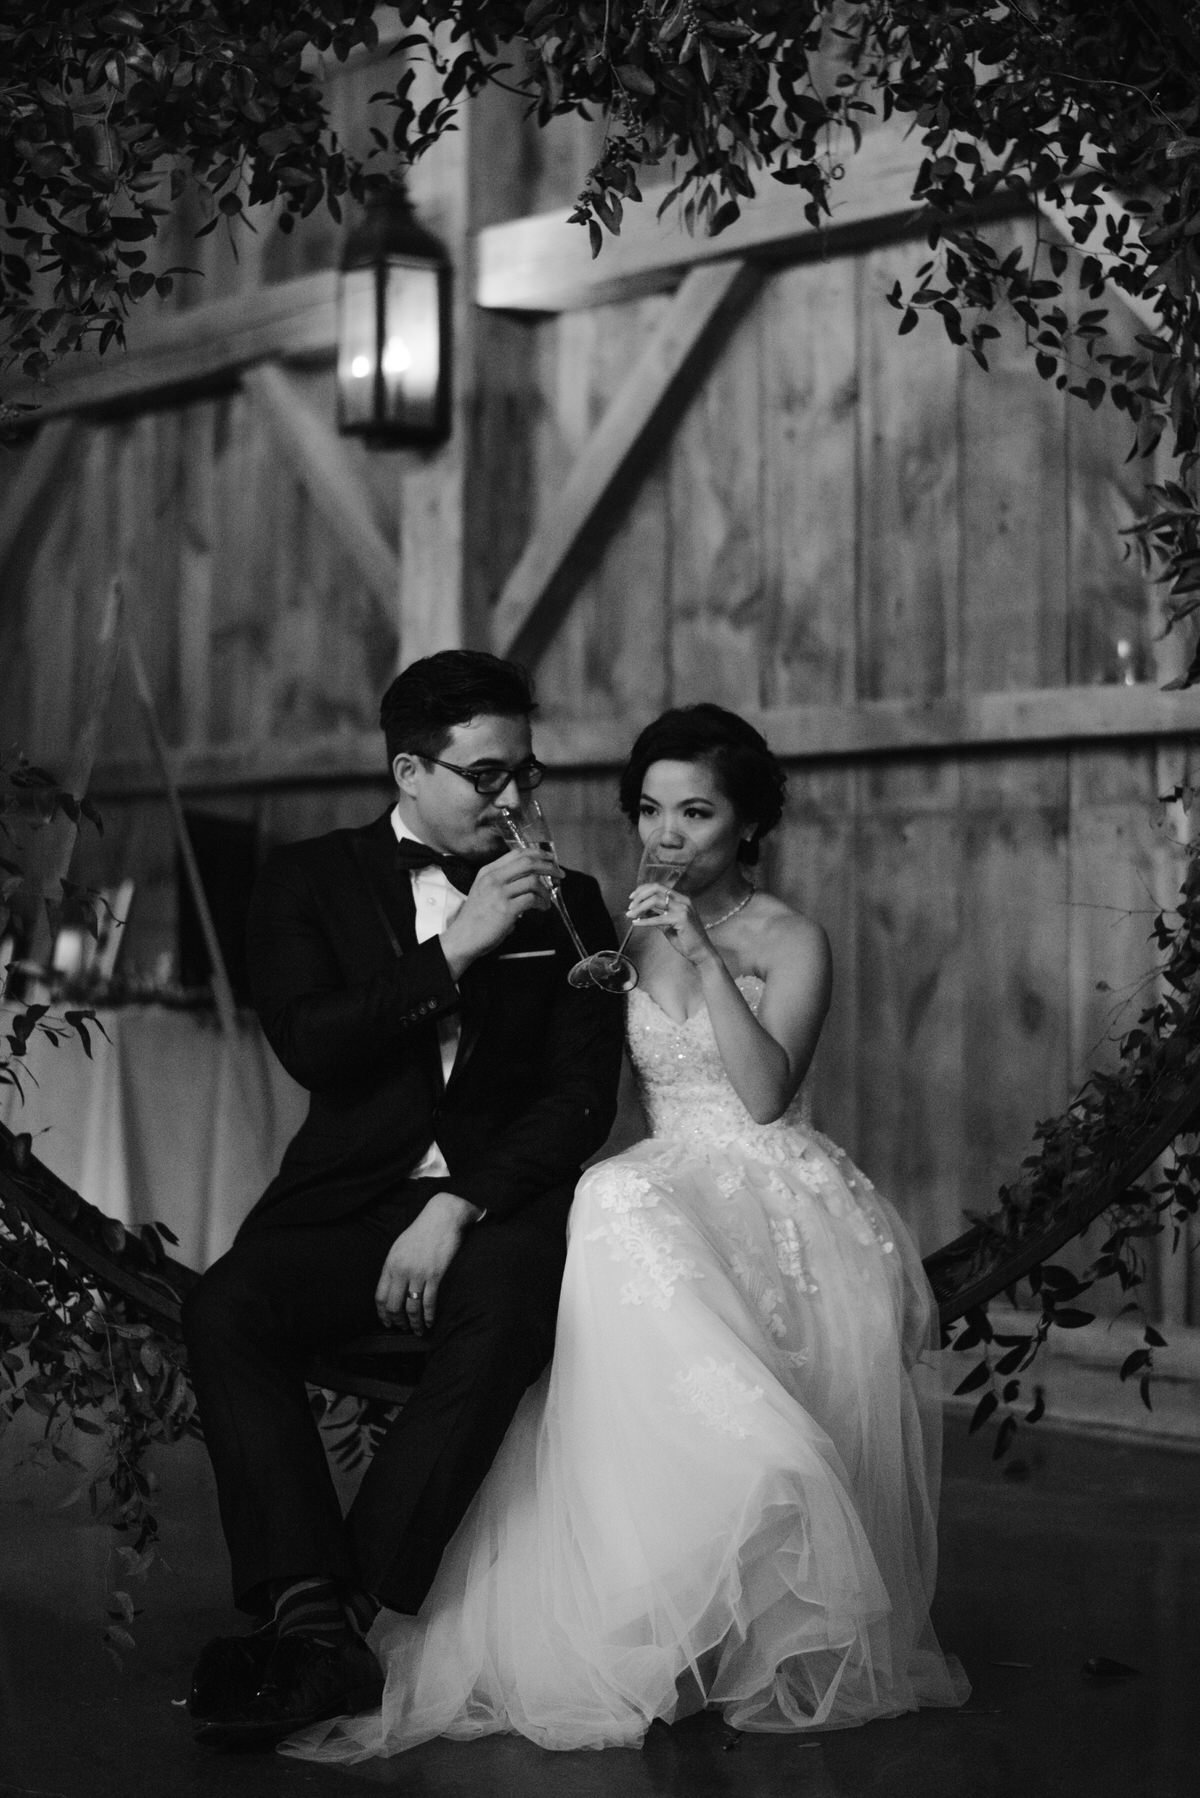 bride and groom enjoy toast together